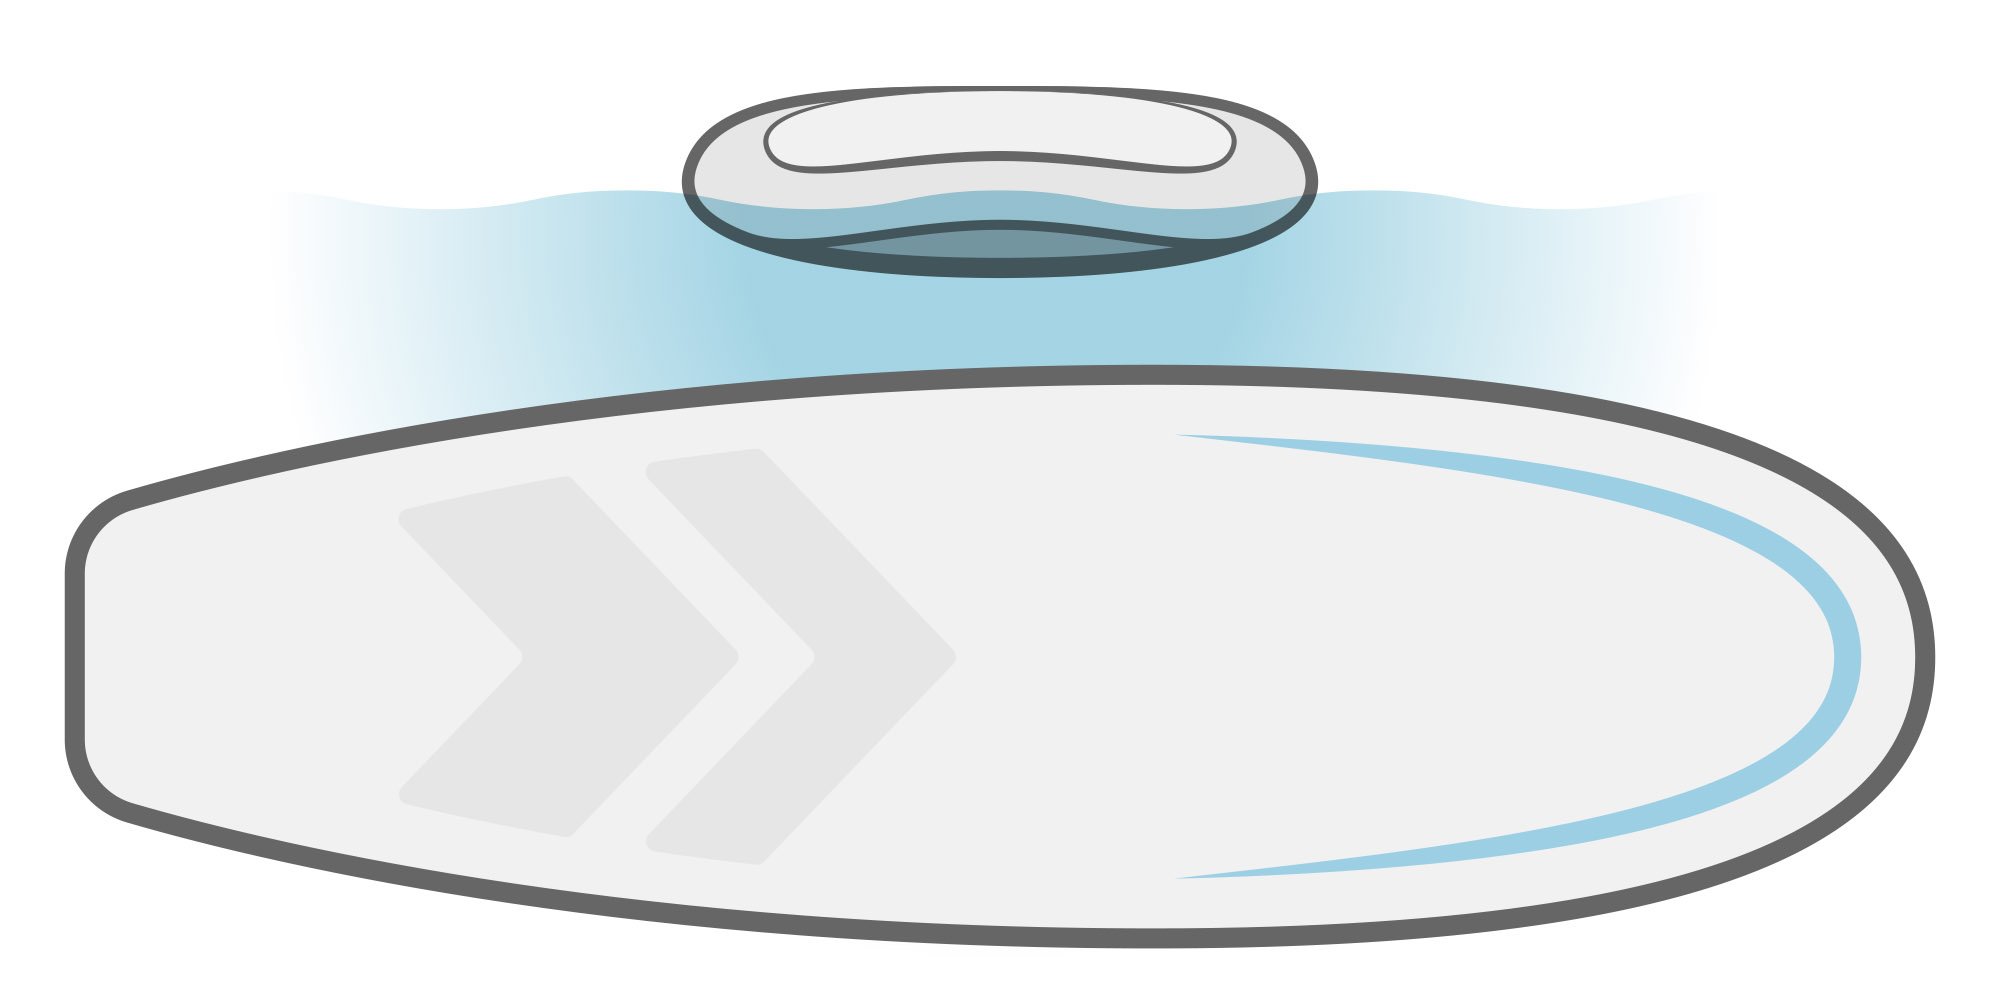 Illustrazione di paddleboard SUP con scafo planante.